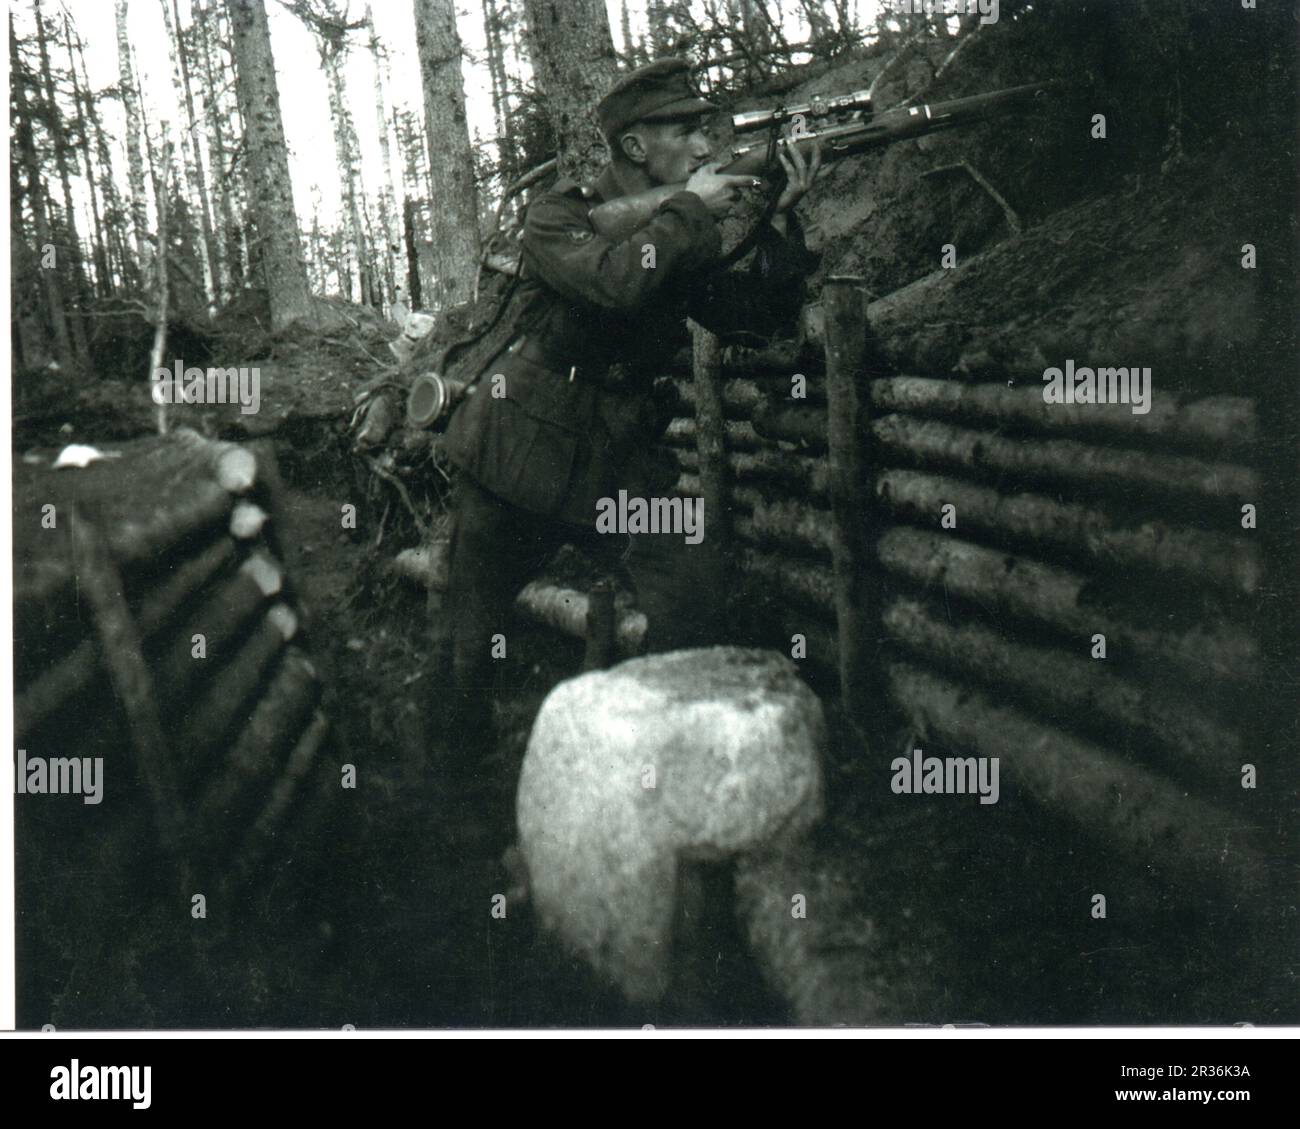 World war Two B&W Foto Ein deutscher Bergtruppen Sniper feuert aus einem Graben in den Wäldern von Nordrussland Stockfoto